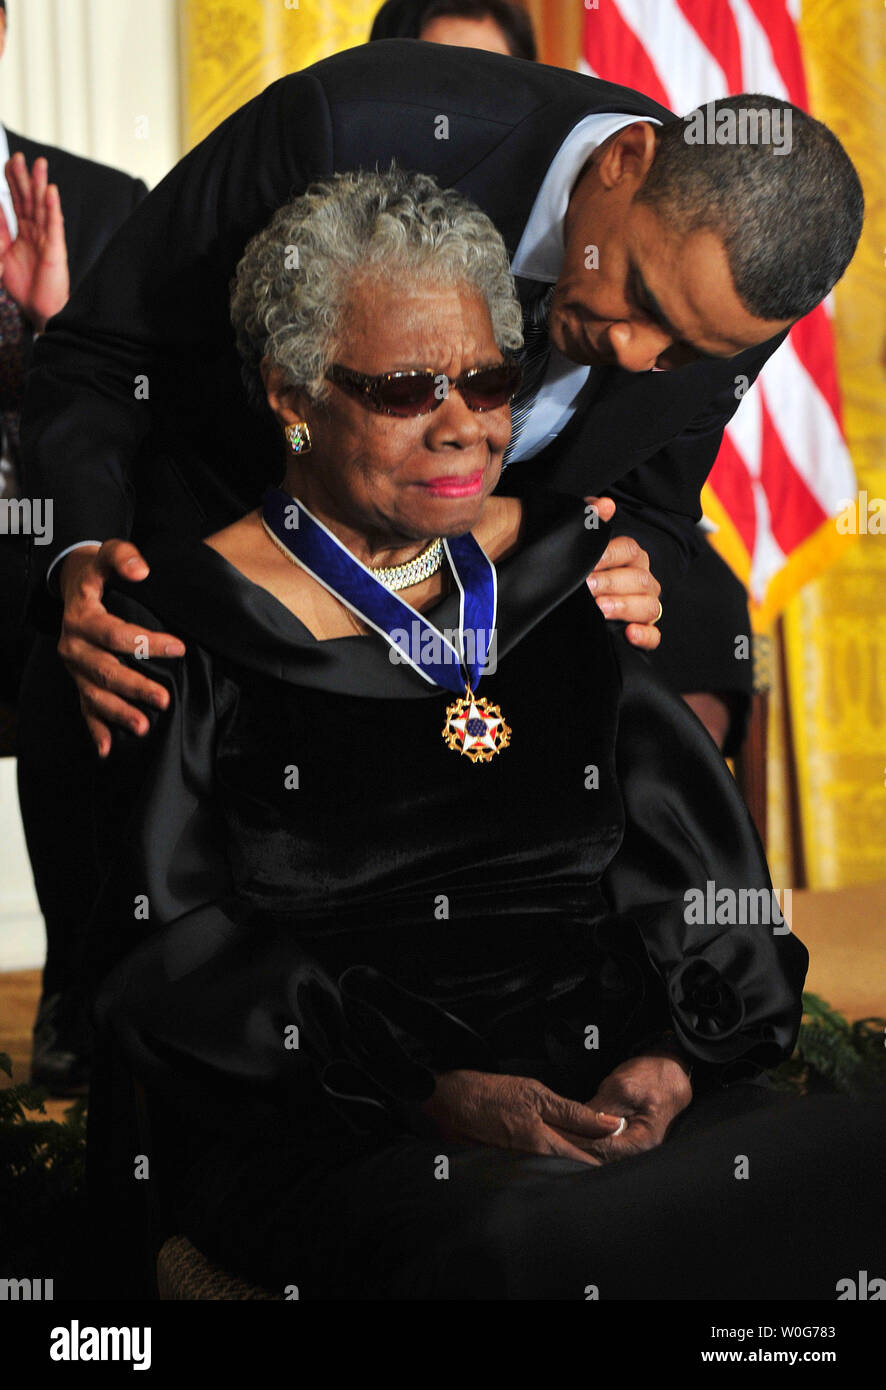 President Barack Obama awards the 2010 Presidential Medal of